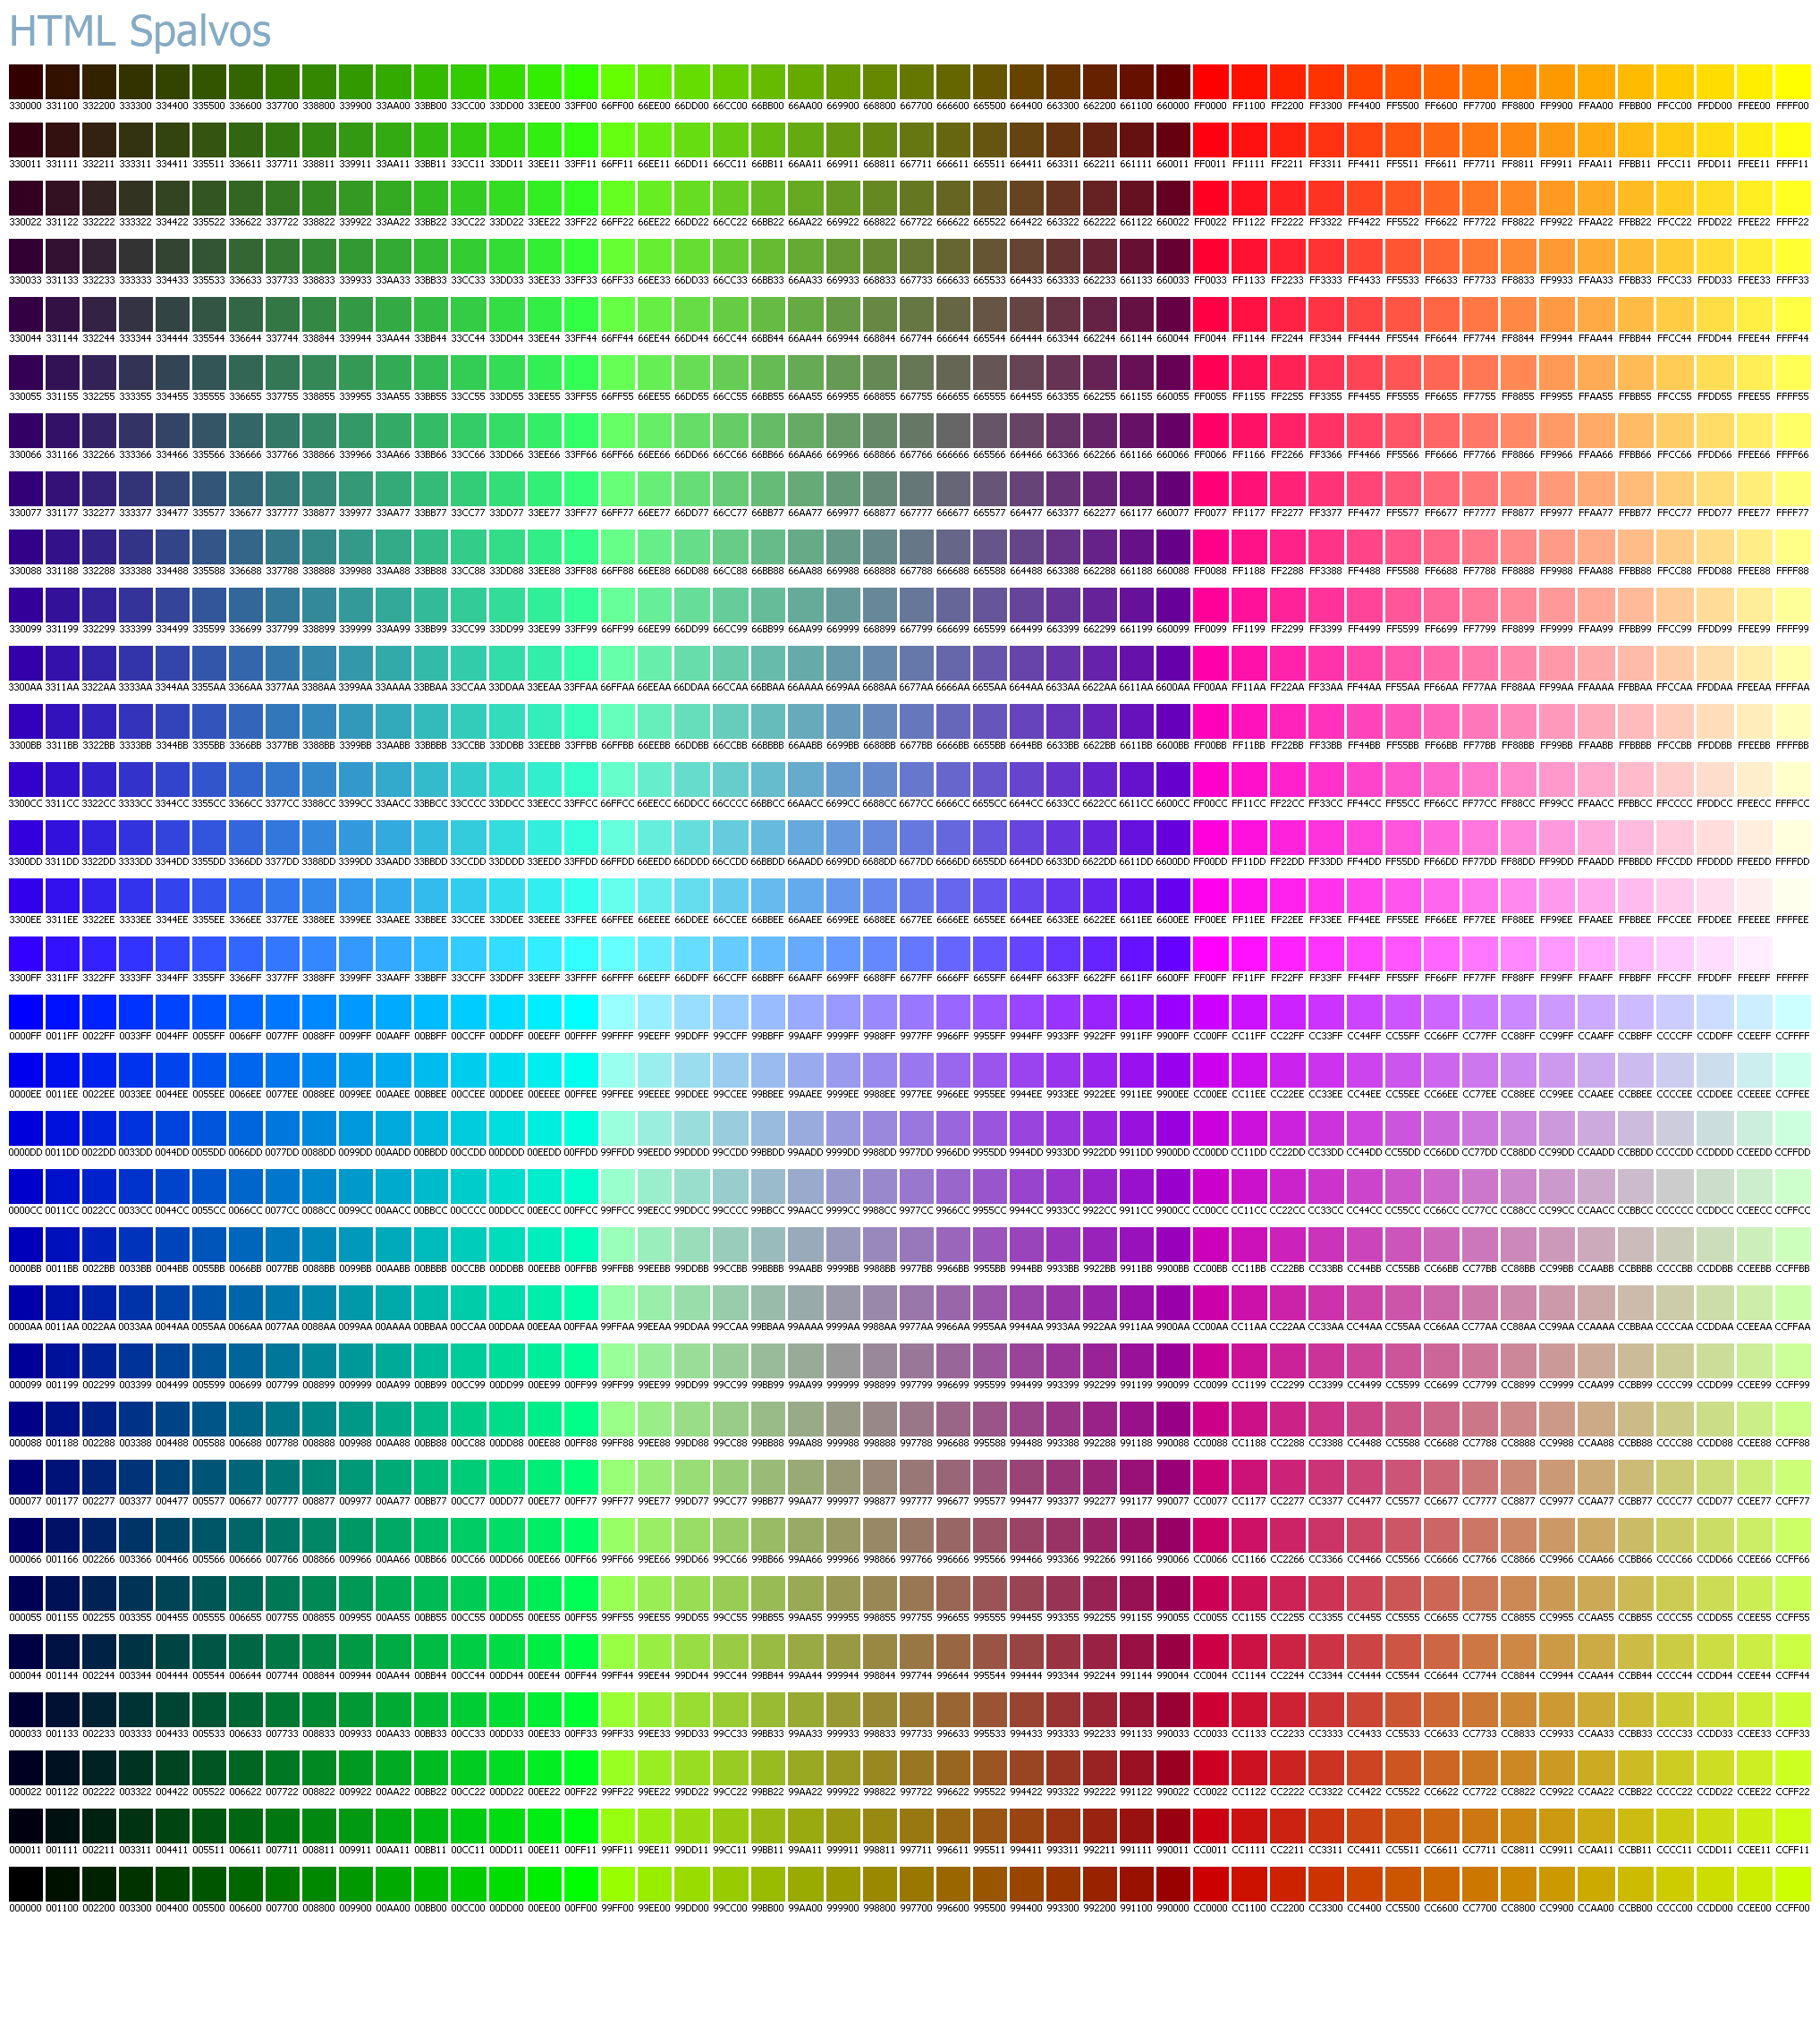 html kodai spalvos